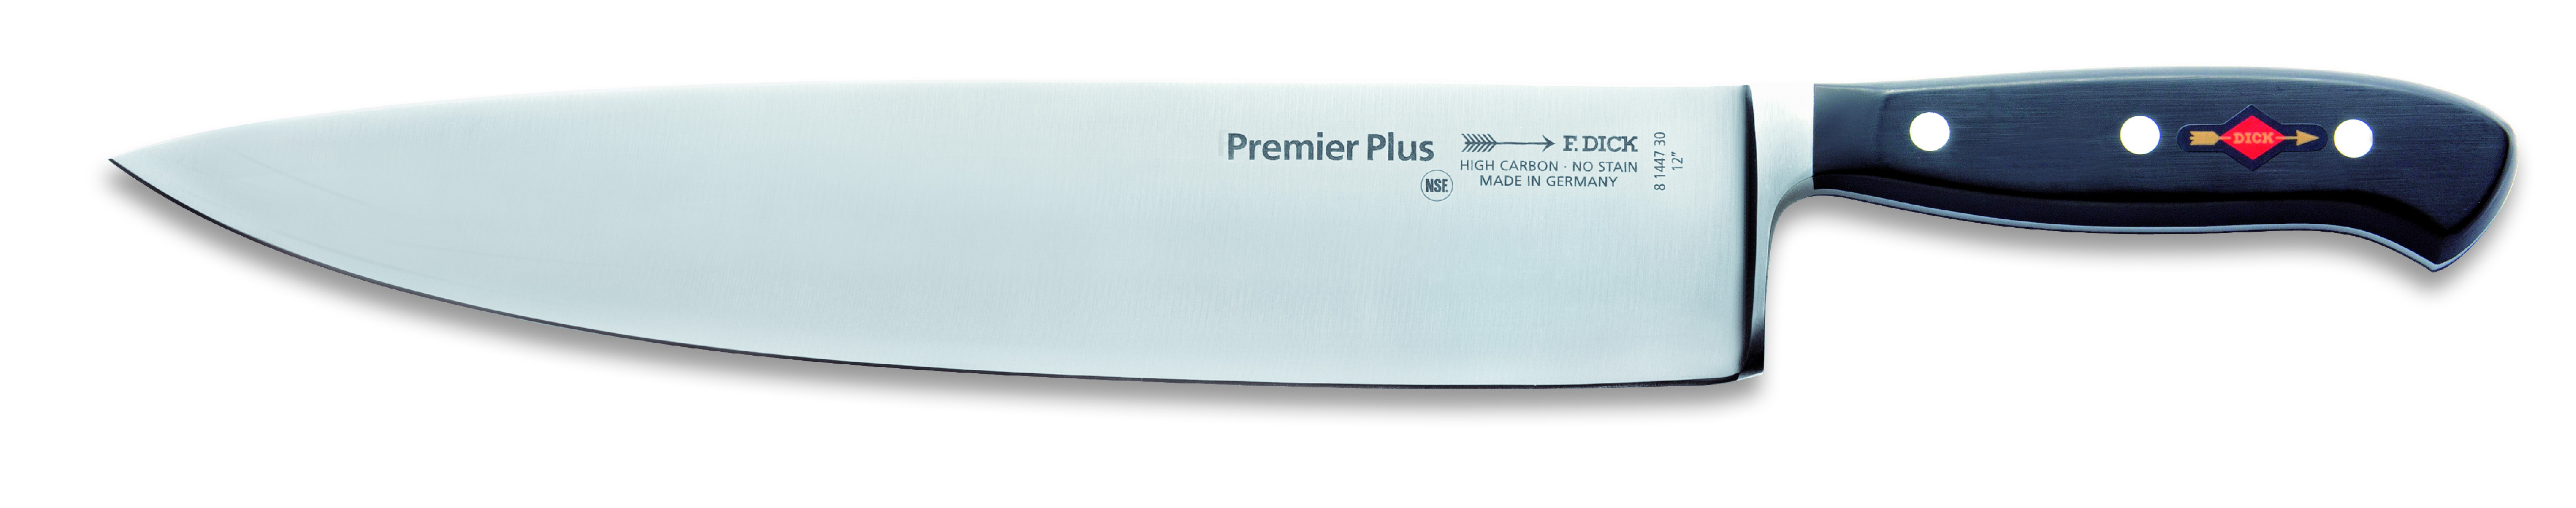 Kuchařský nůž Premier Plus kovaný v délce 30 cm